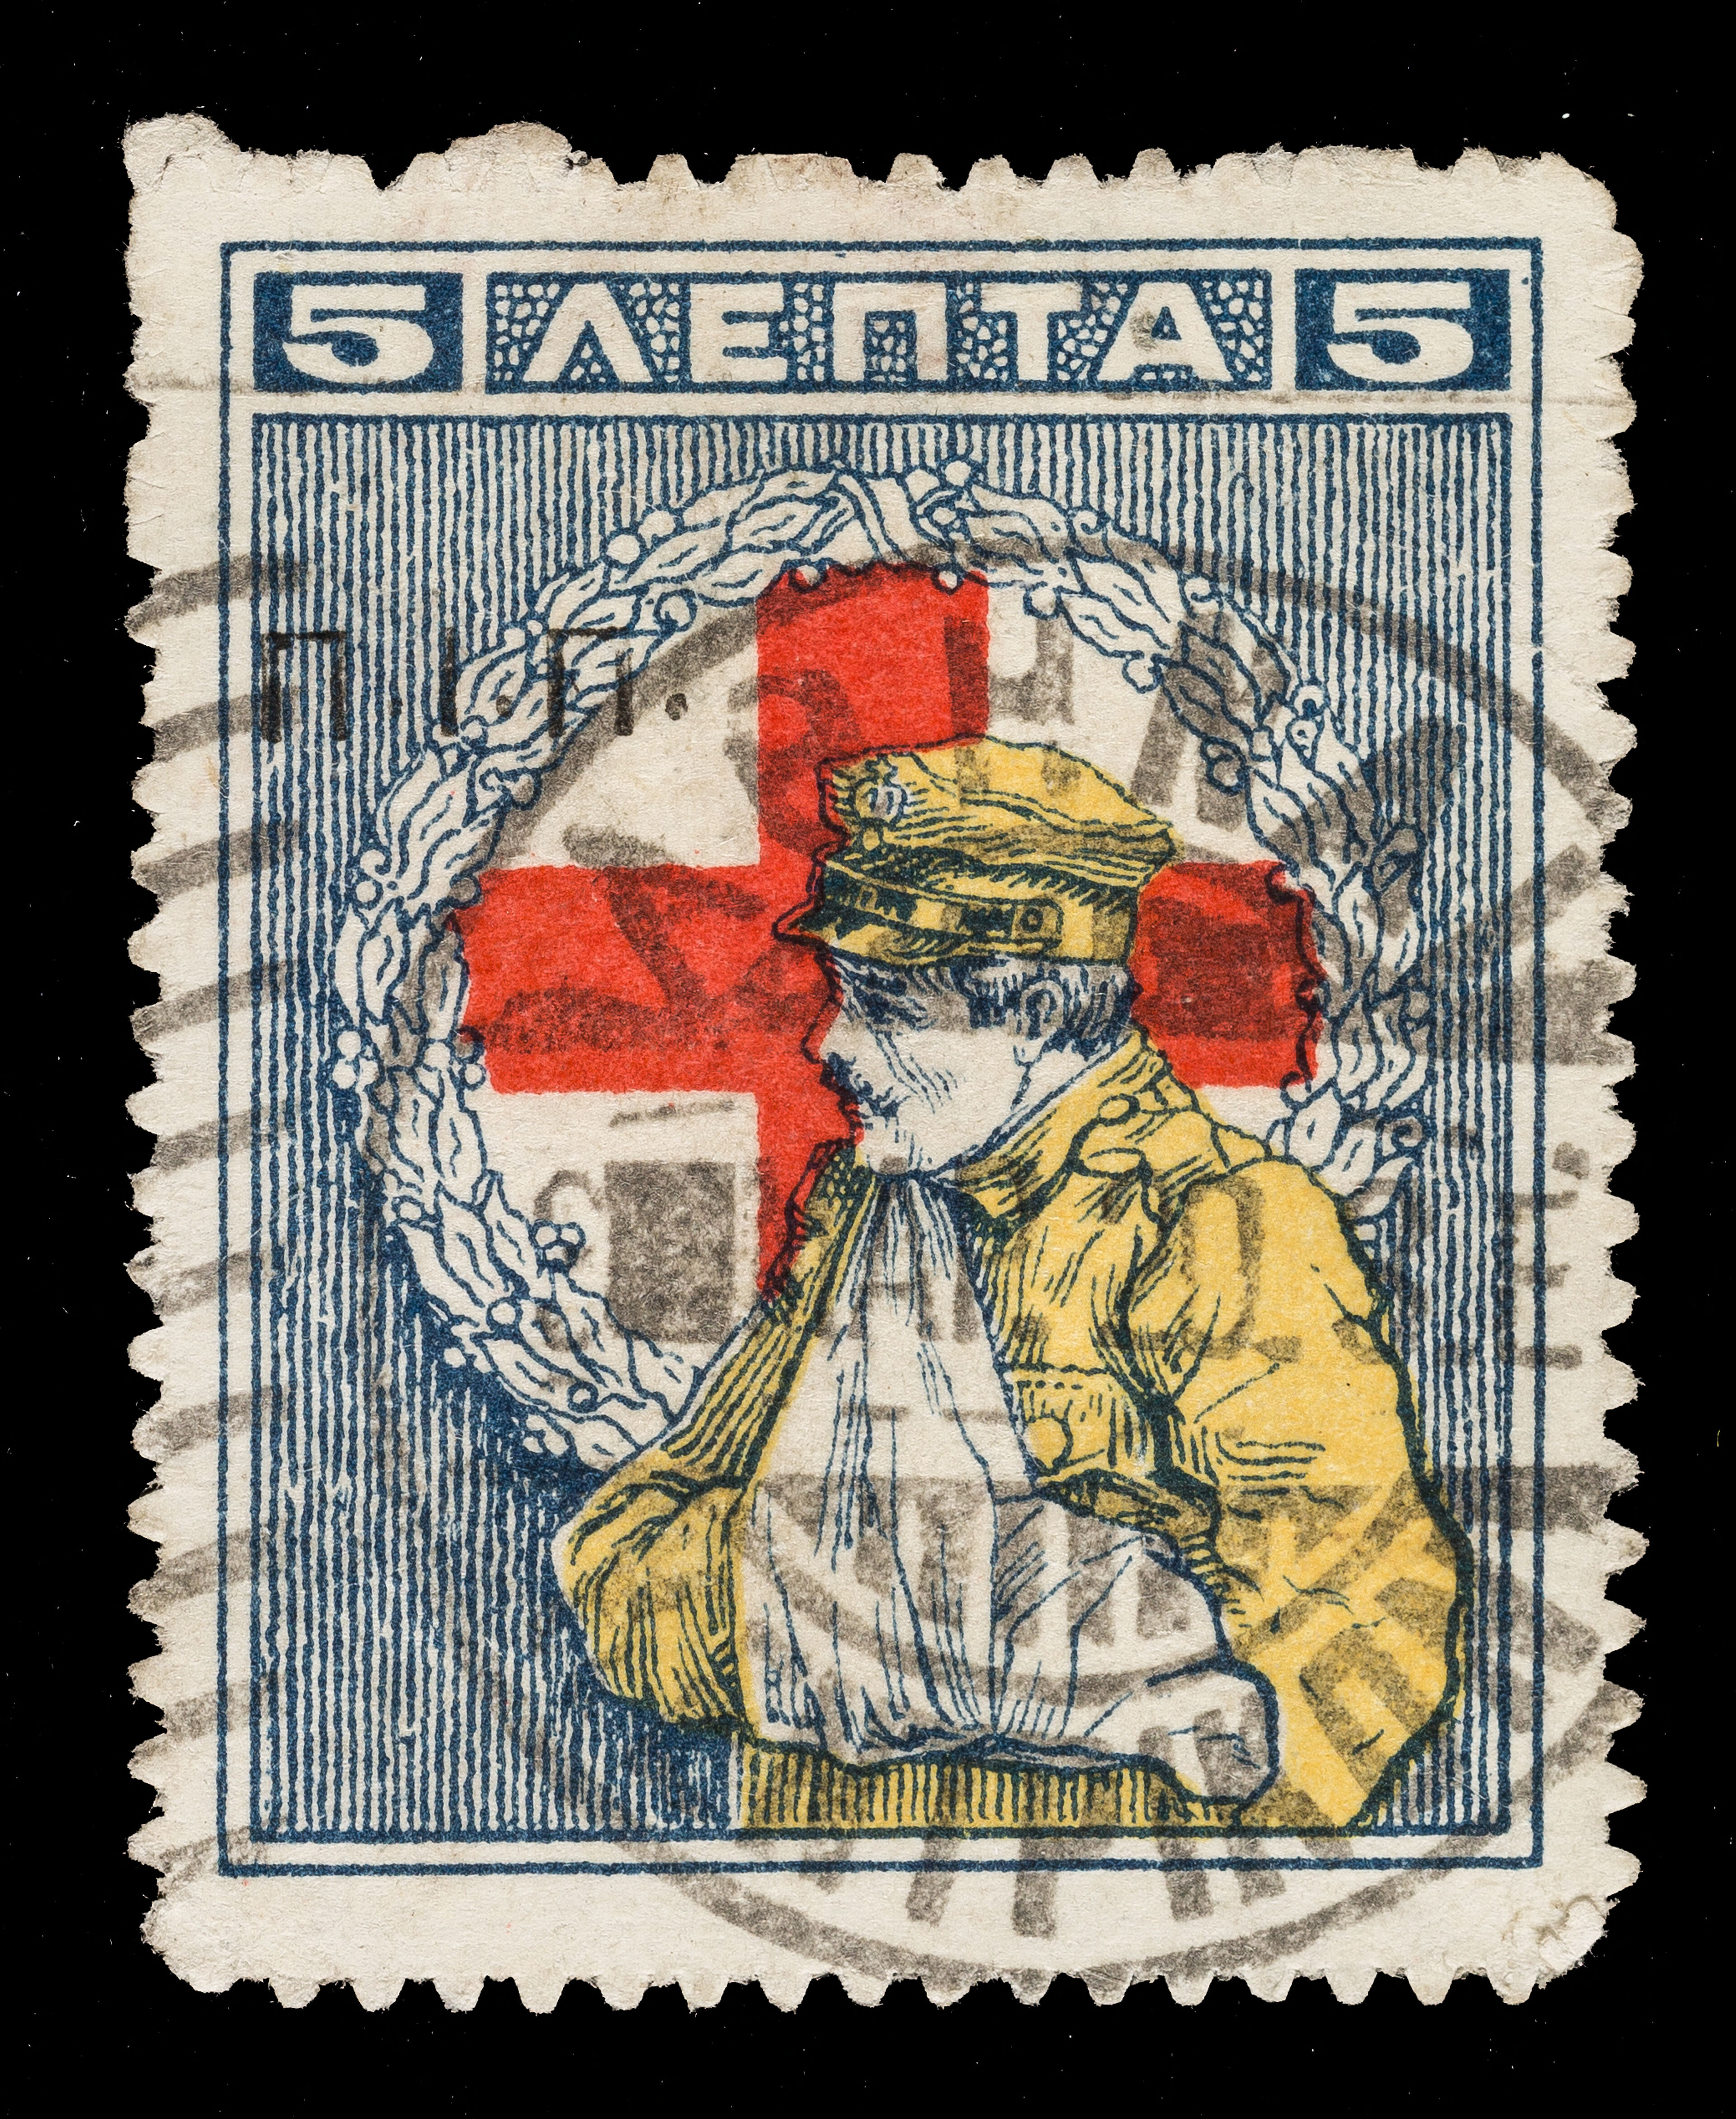 [5 ΛΕΠΤΑ charity stamp showing a soldier with his left arm in a sling against  a red cross].